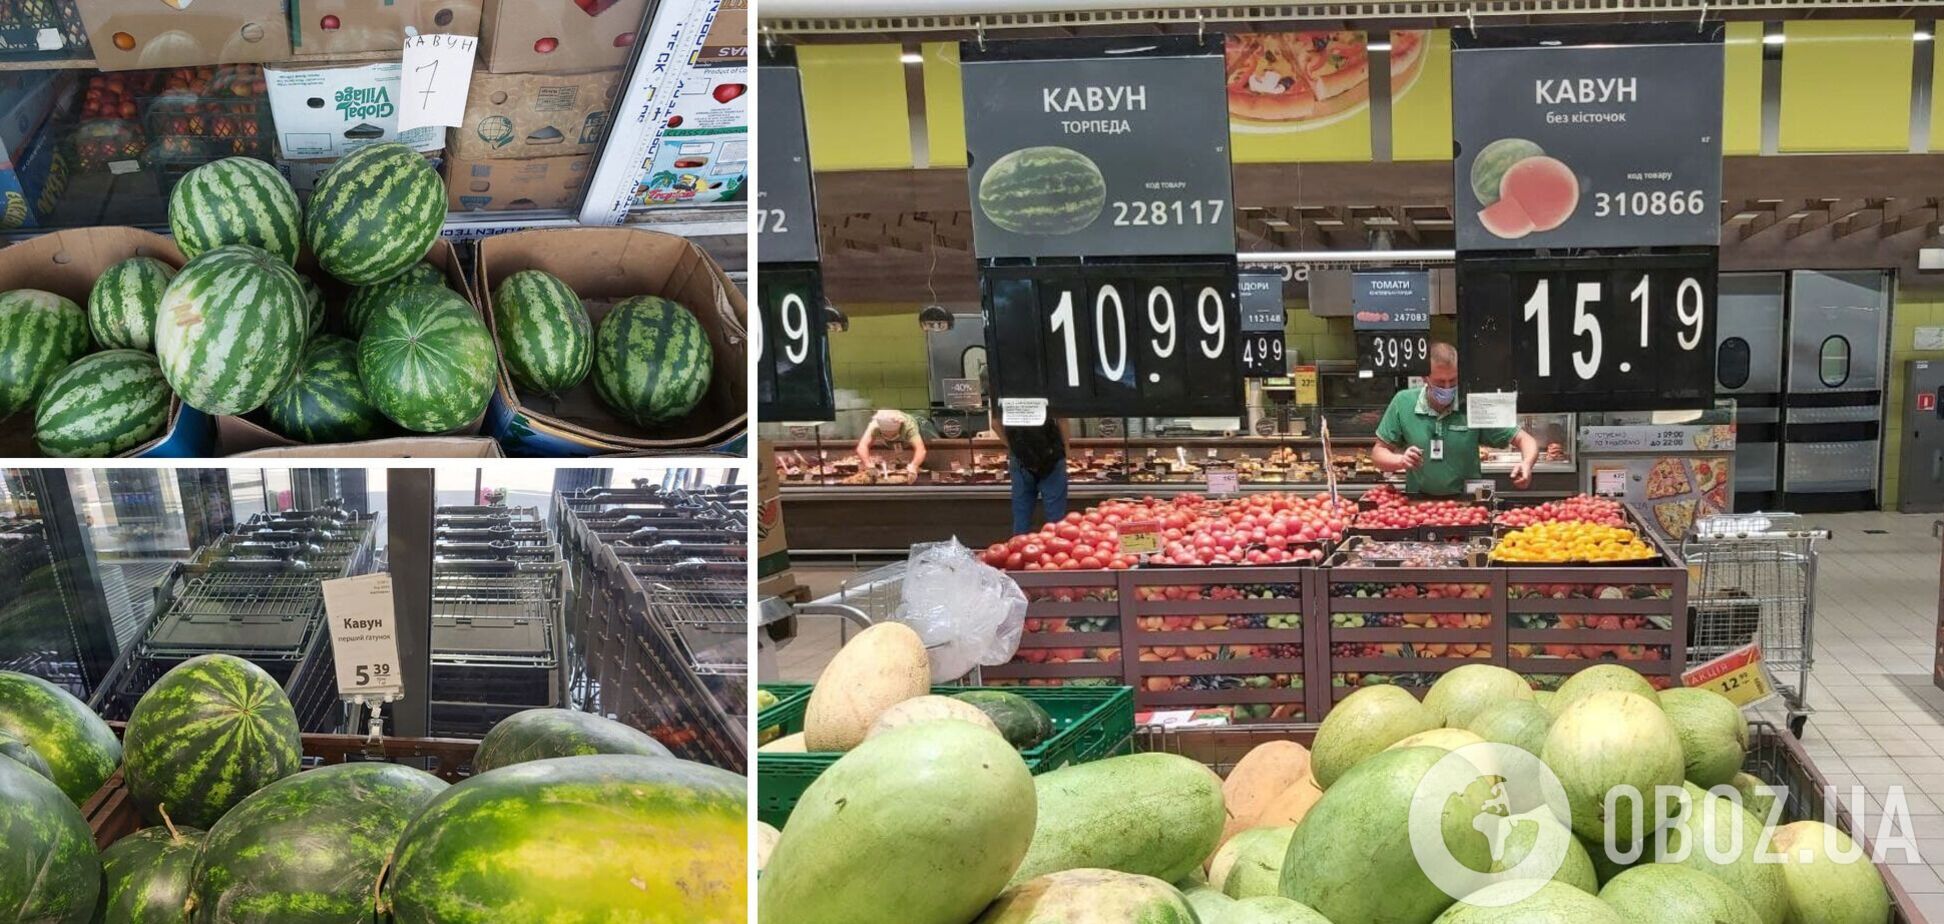 Некоторые супермаркеты продают херсонские арбузы